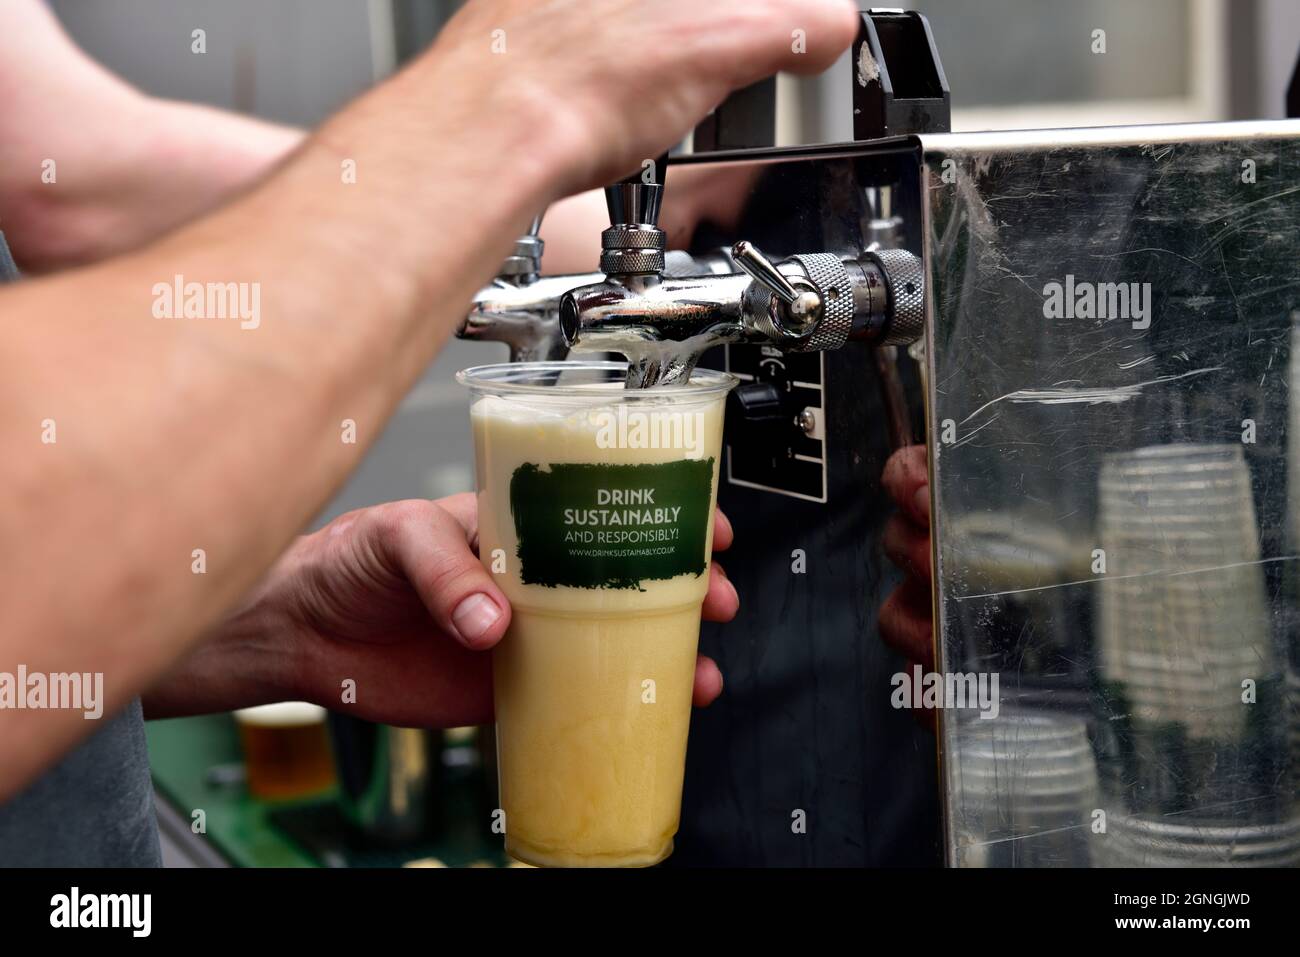 Tirer une pinte de bière avec le logo « boire de manière durable et responsable » sur le verre Banque D'Images